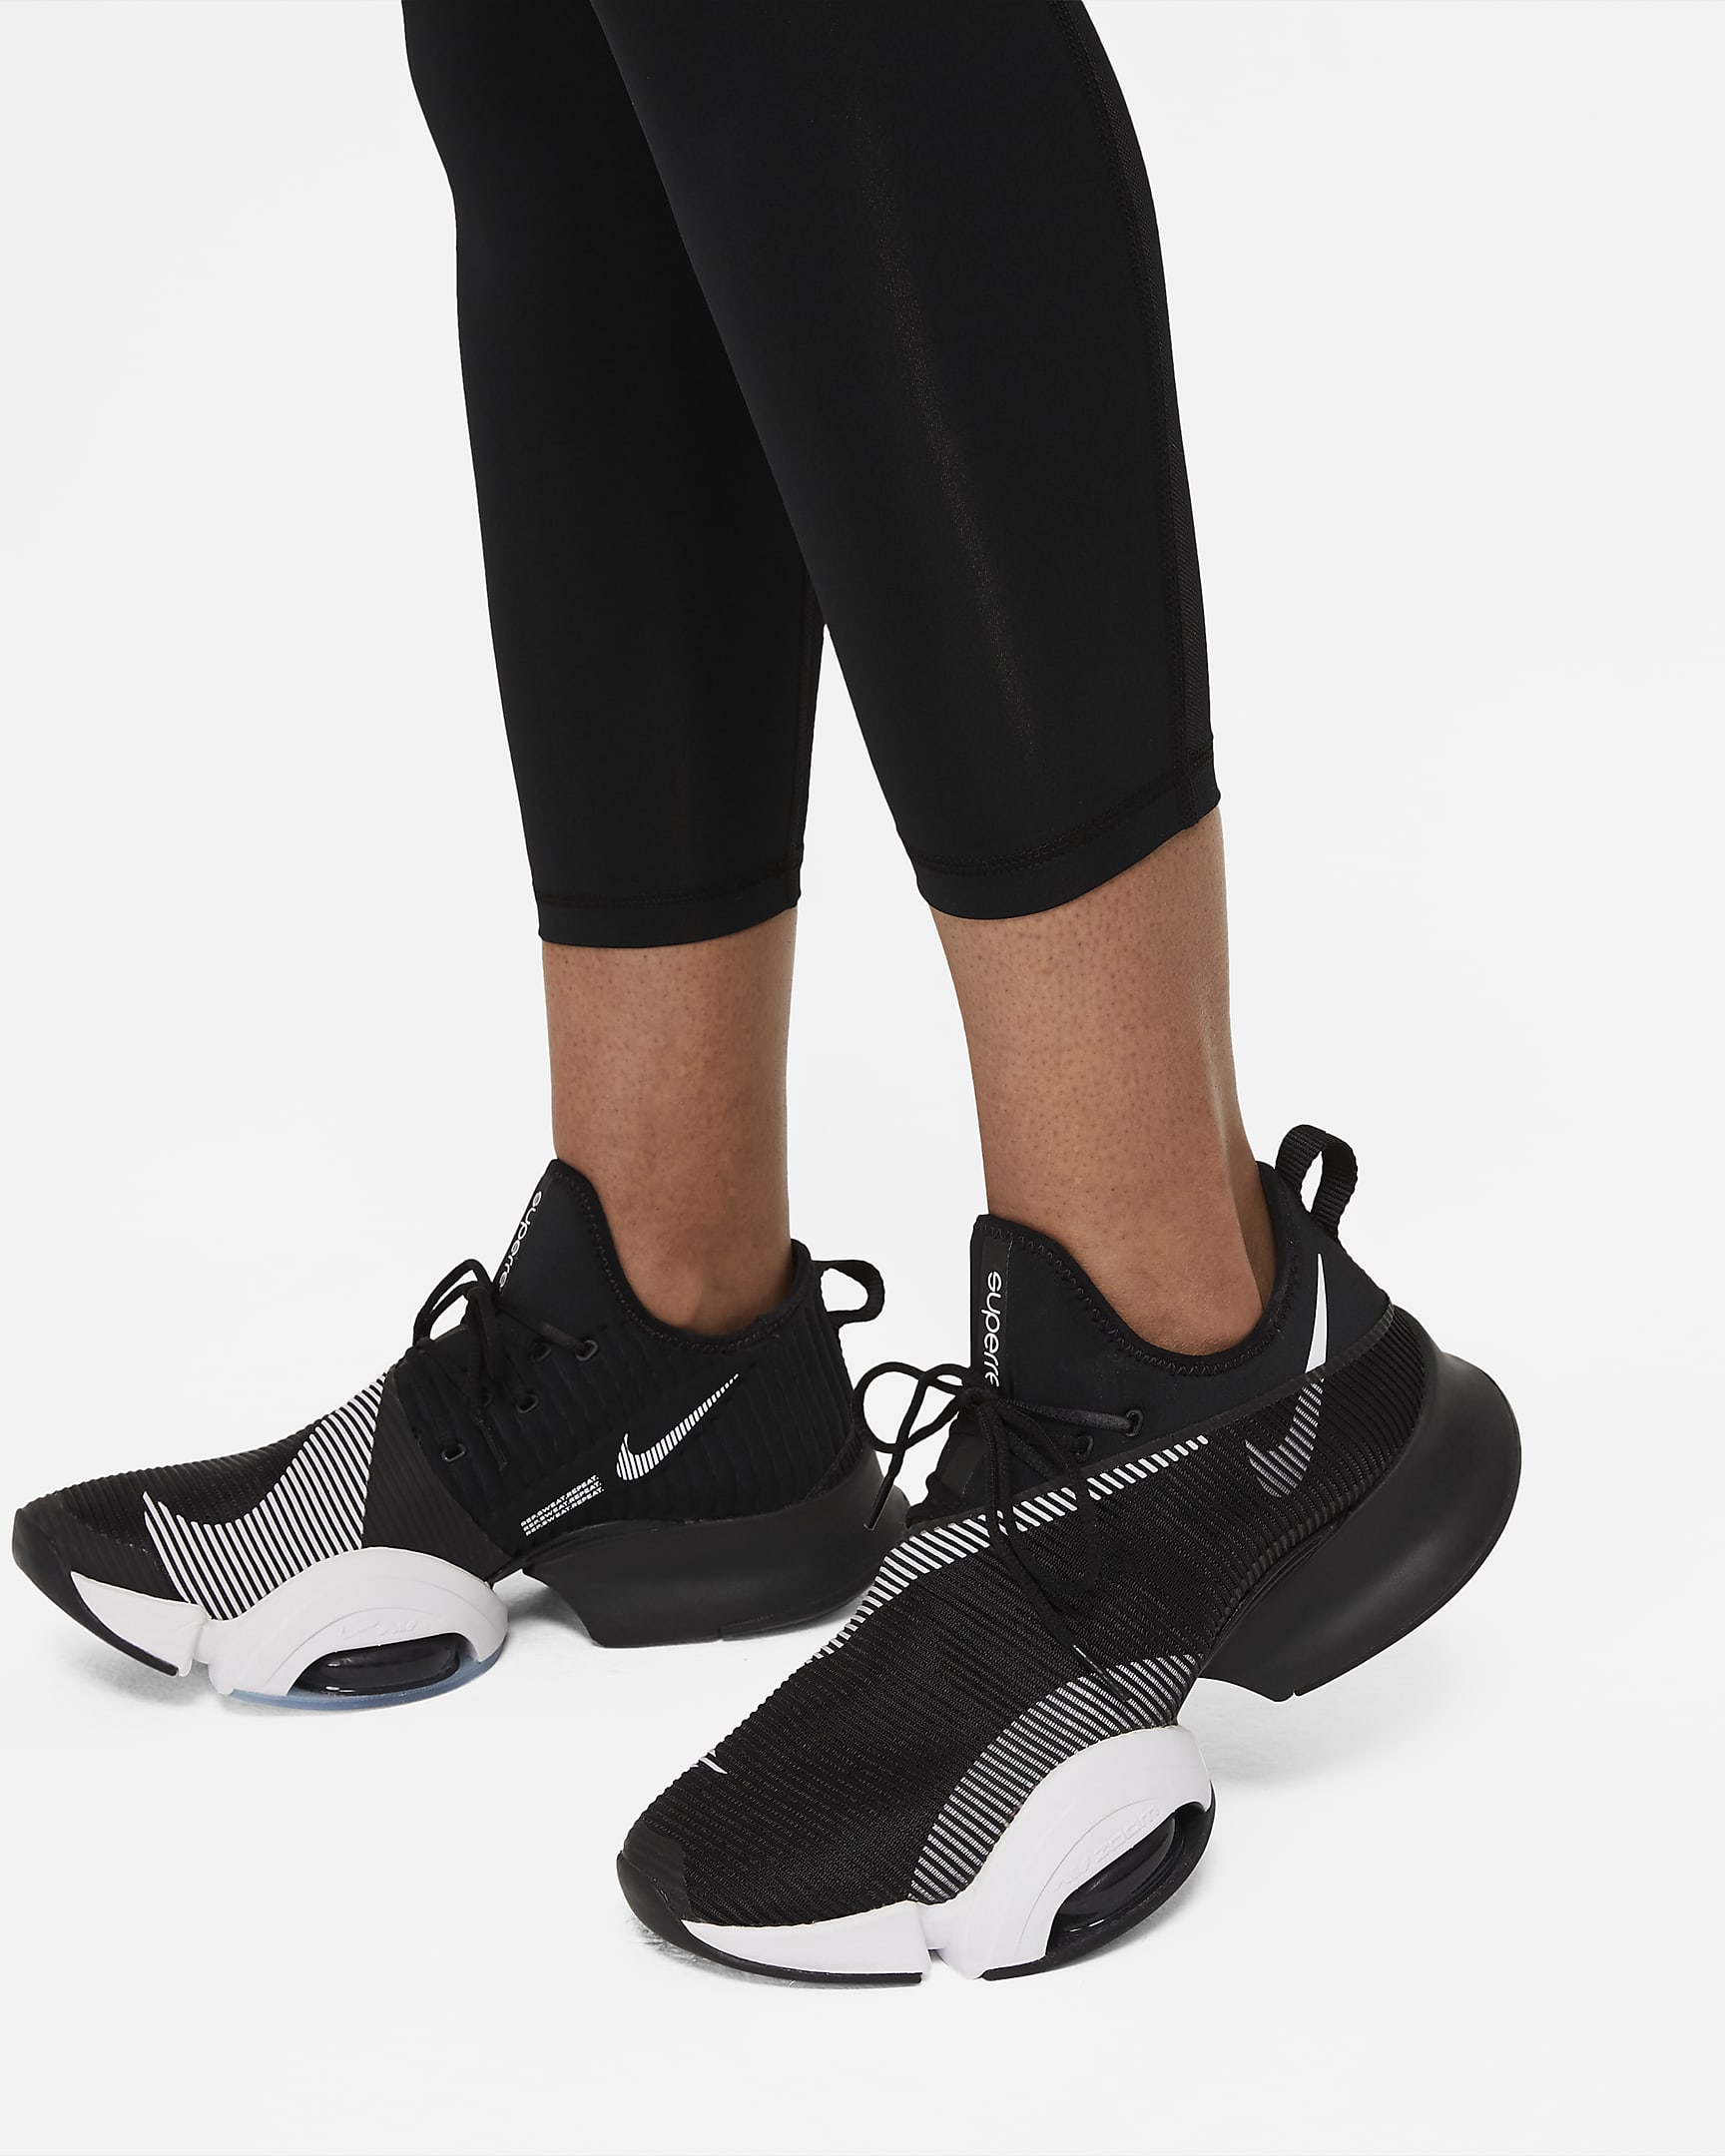 Nike Pro 365 Women's High-Waisted 7/8 Mesh Panel Leggings. Nike UK